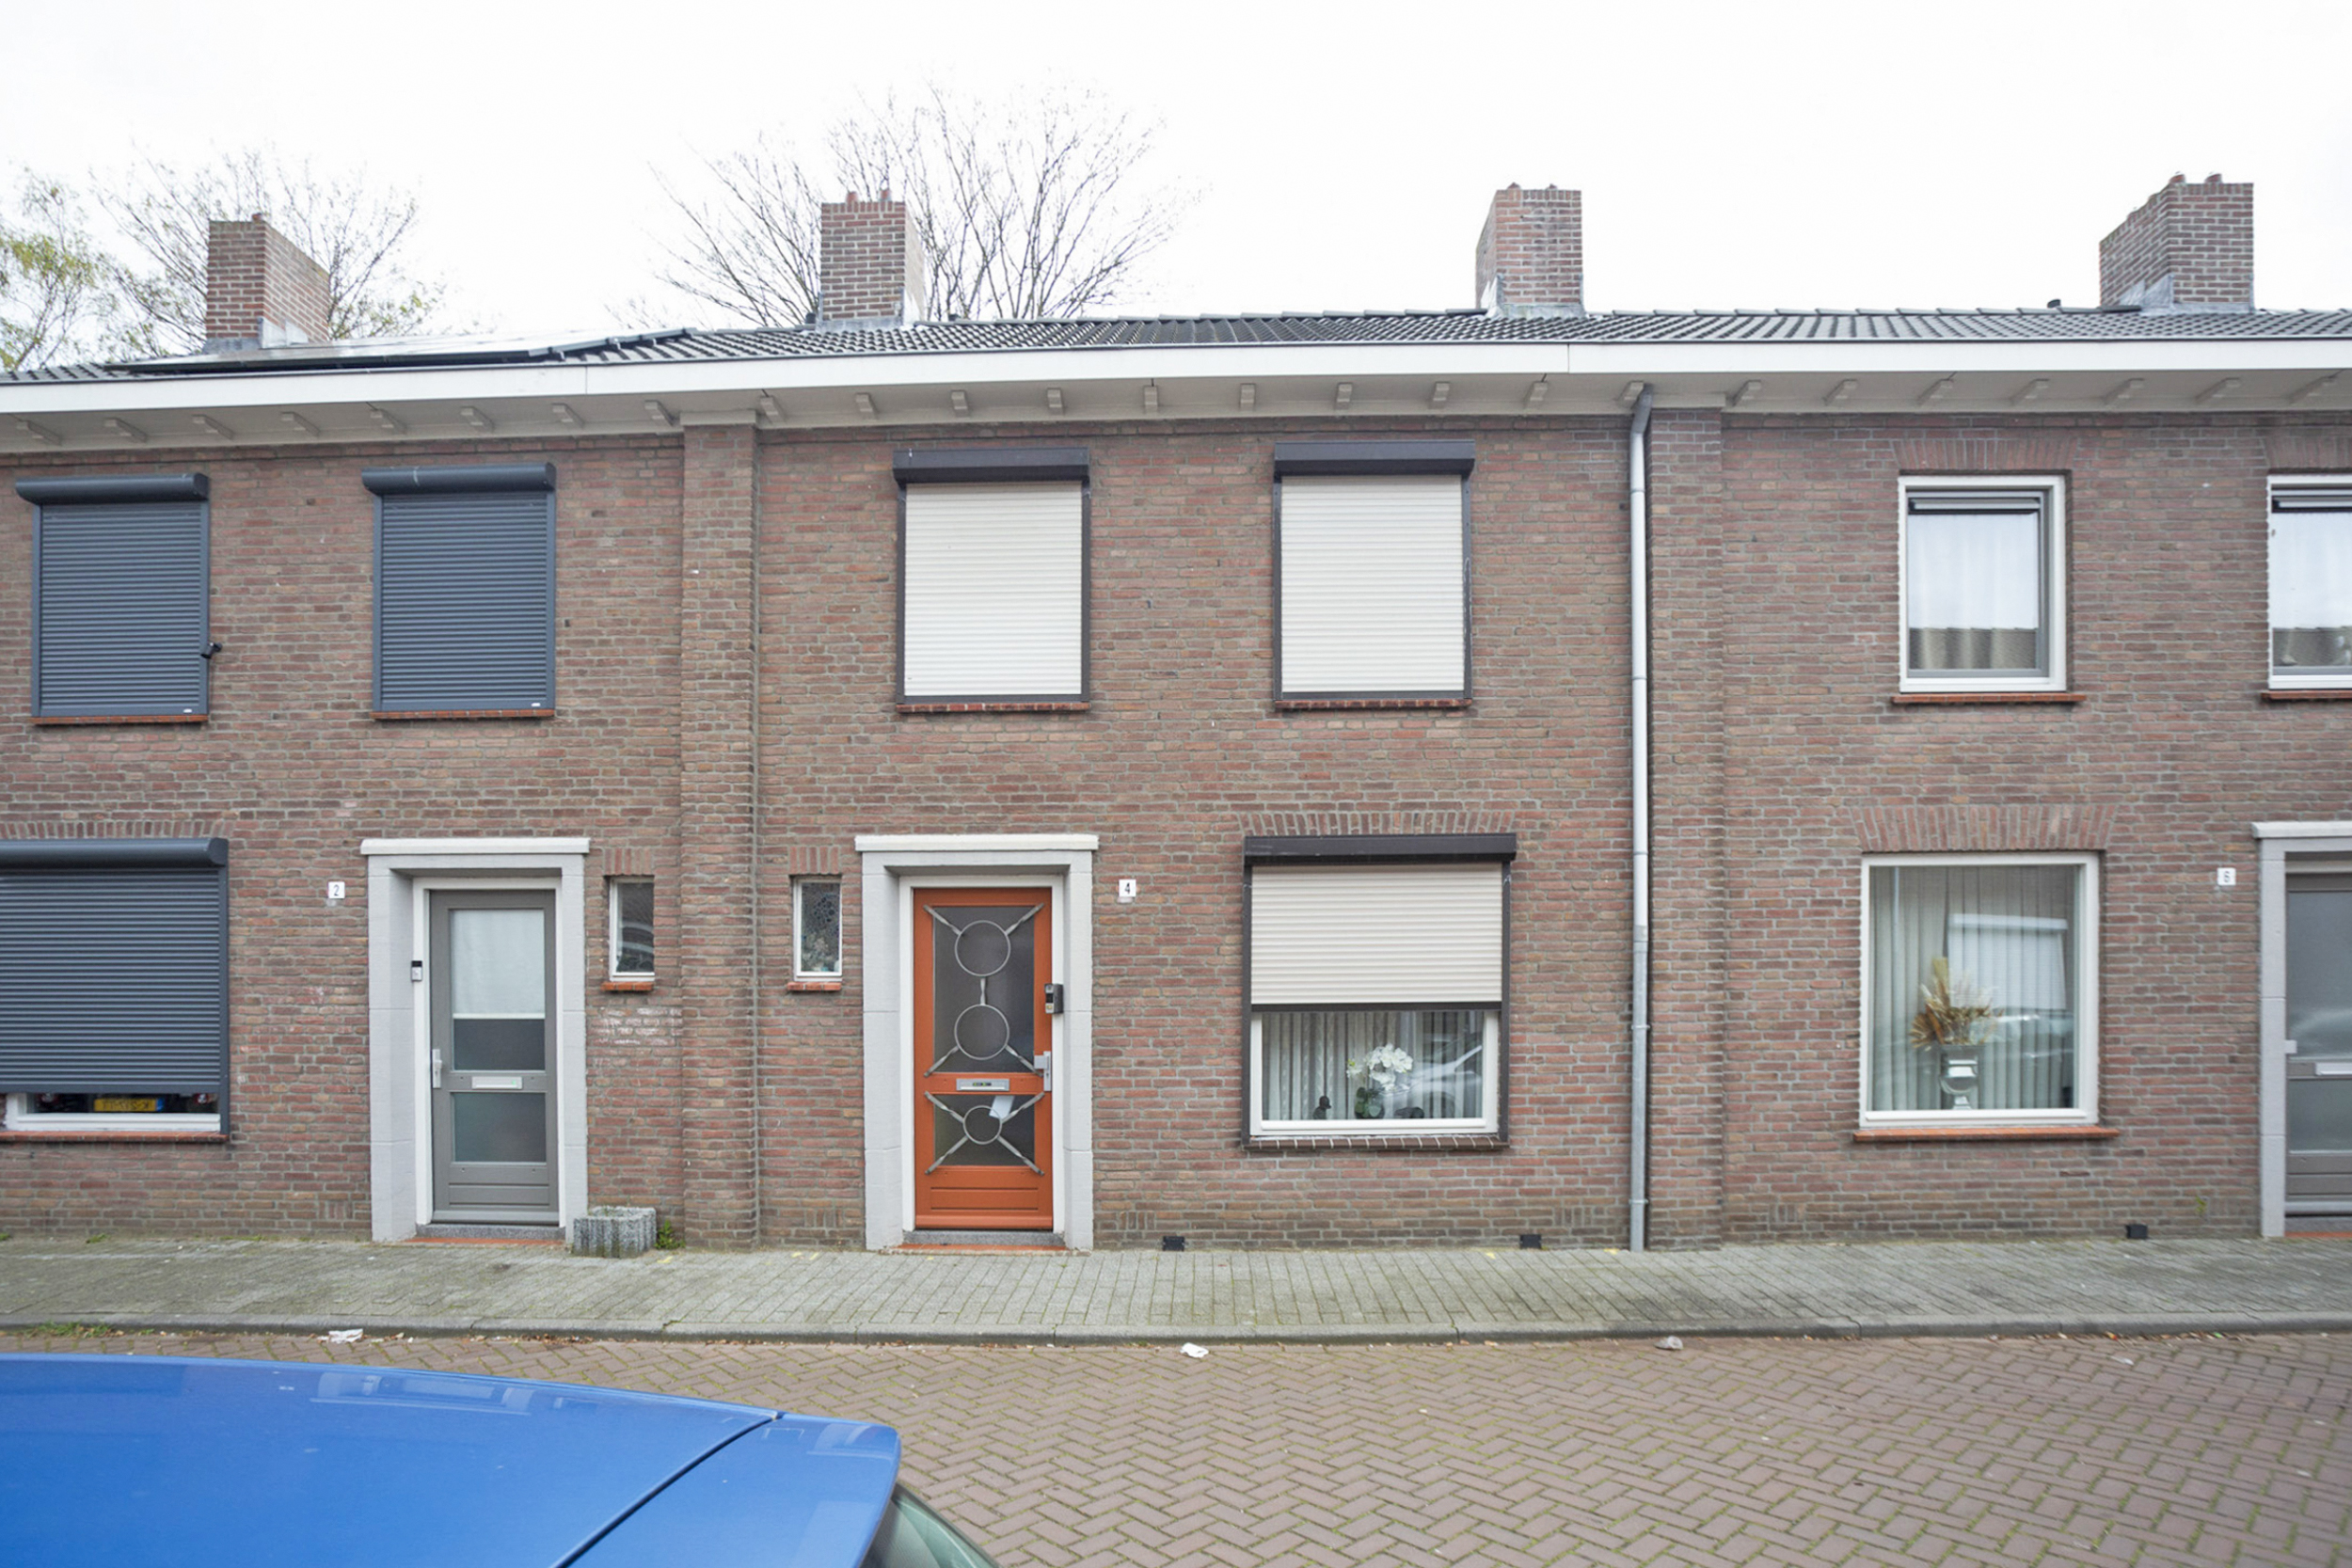 Van Musschenbroekstraat 4, 5025 EA Tilburg, Nederland